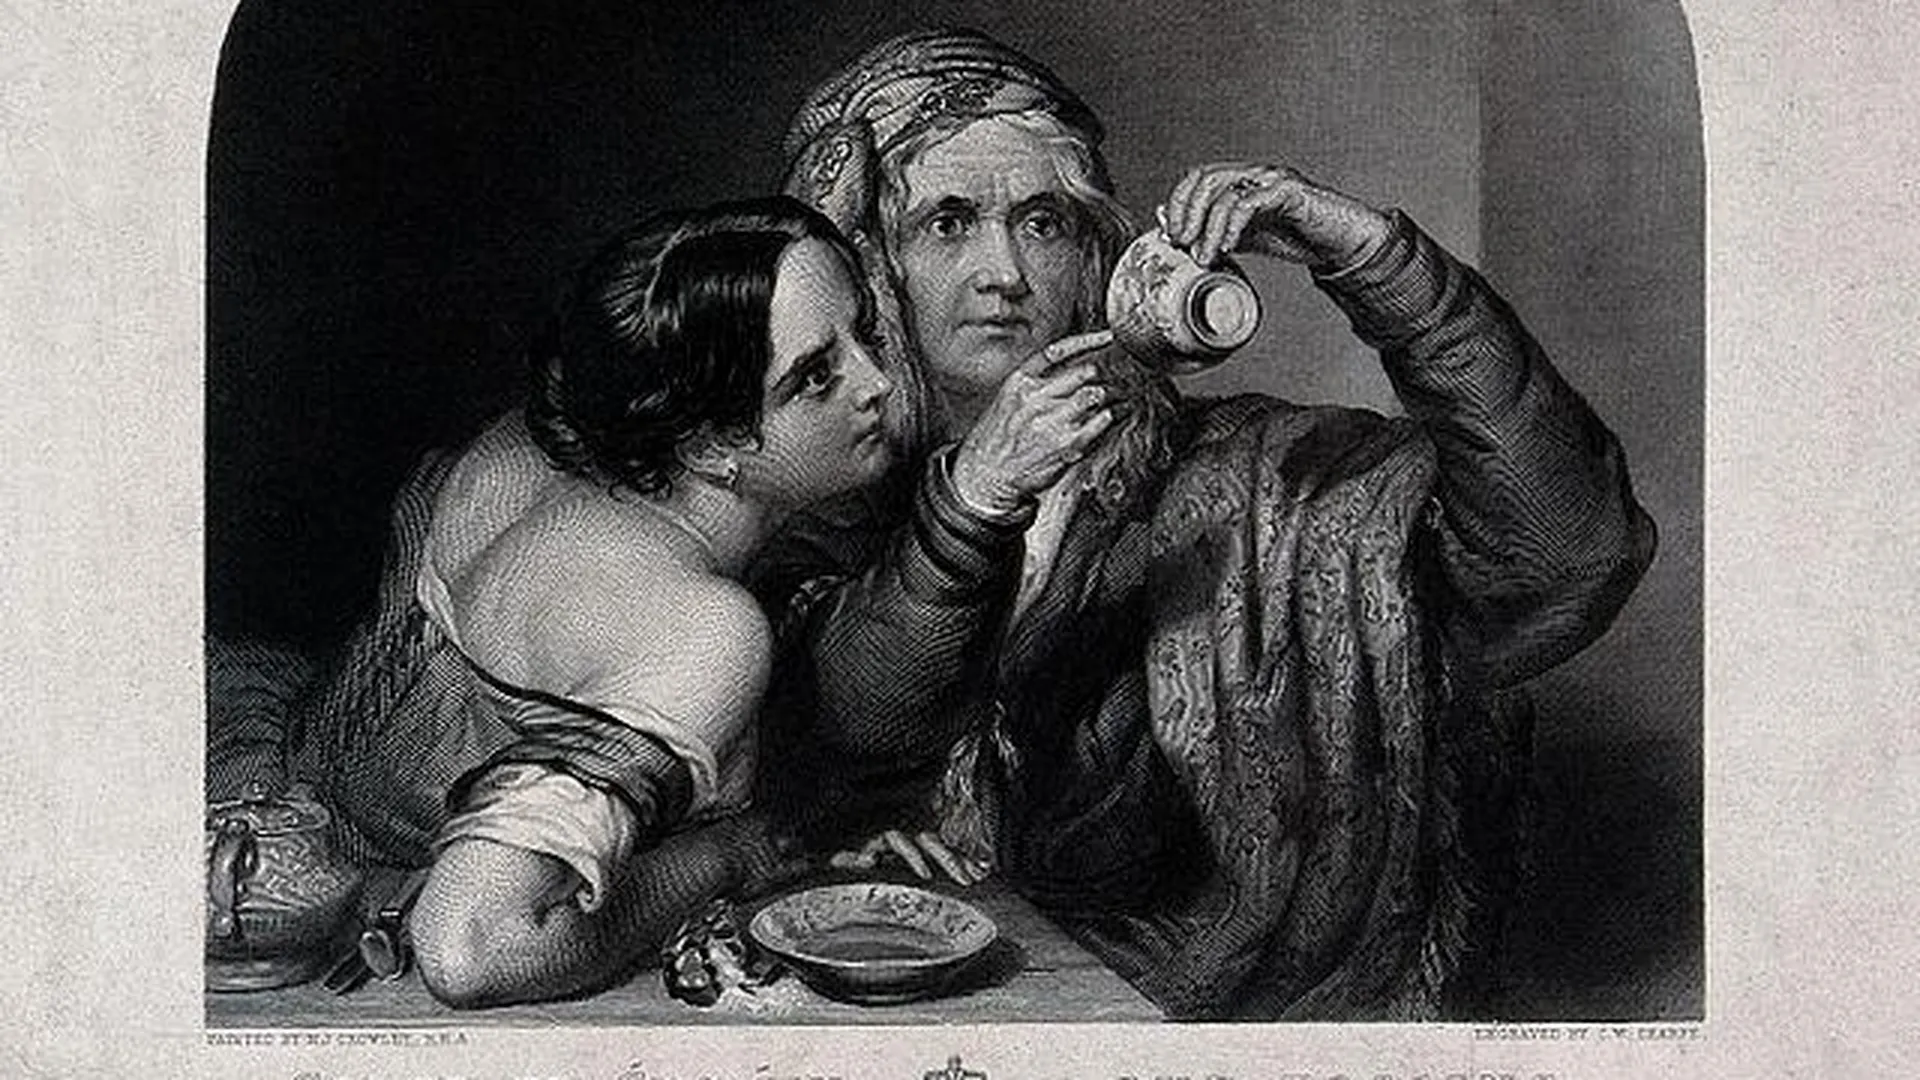 Старая гадалка предсказывает судьбу молодой женщины, глядя на чайные листья на дне чашки. Гравюра Шарпа по Кроули, 1842